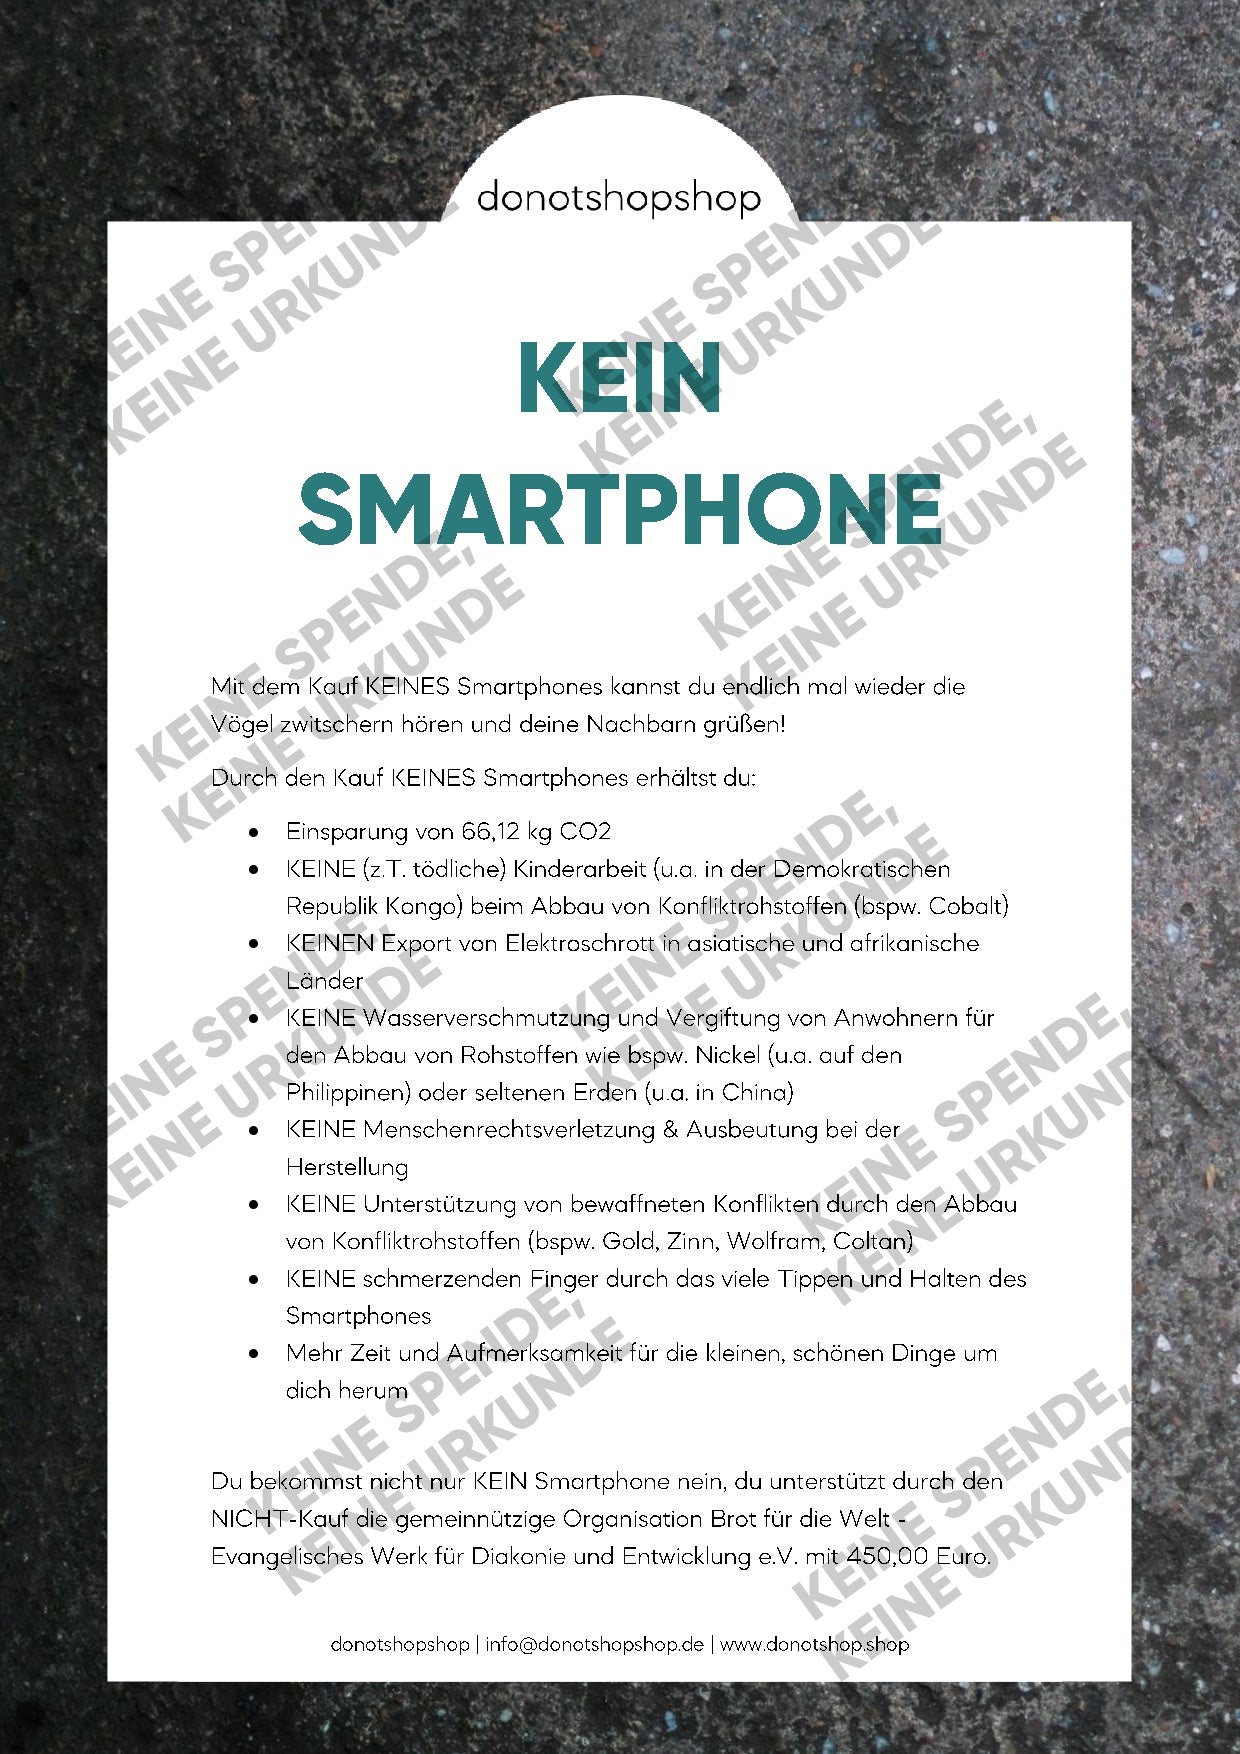 KEIN Smartphone - donotshopshop